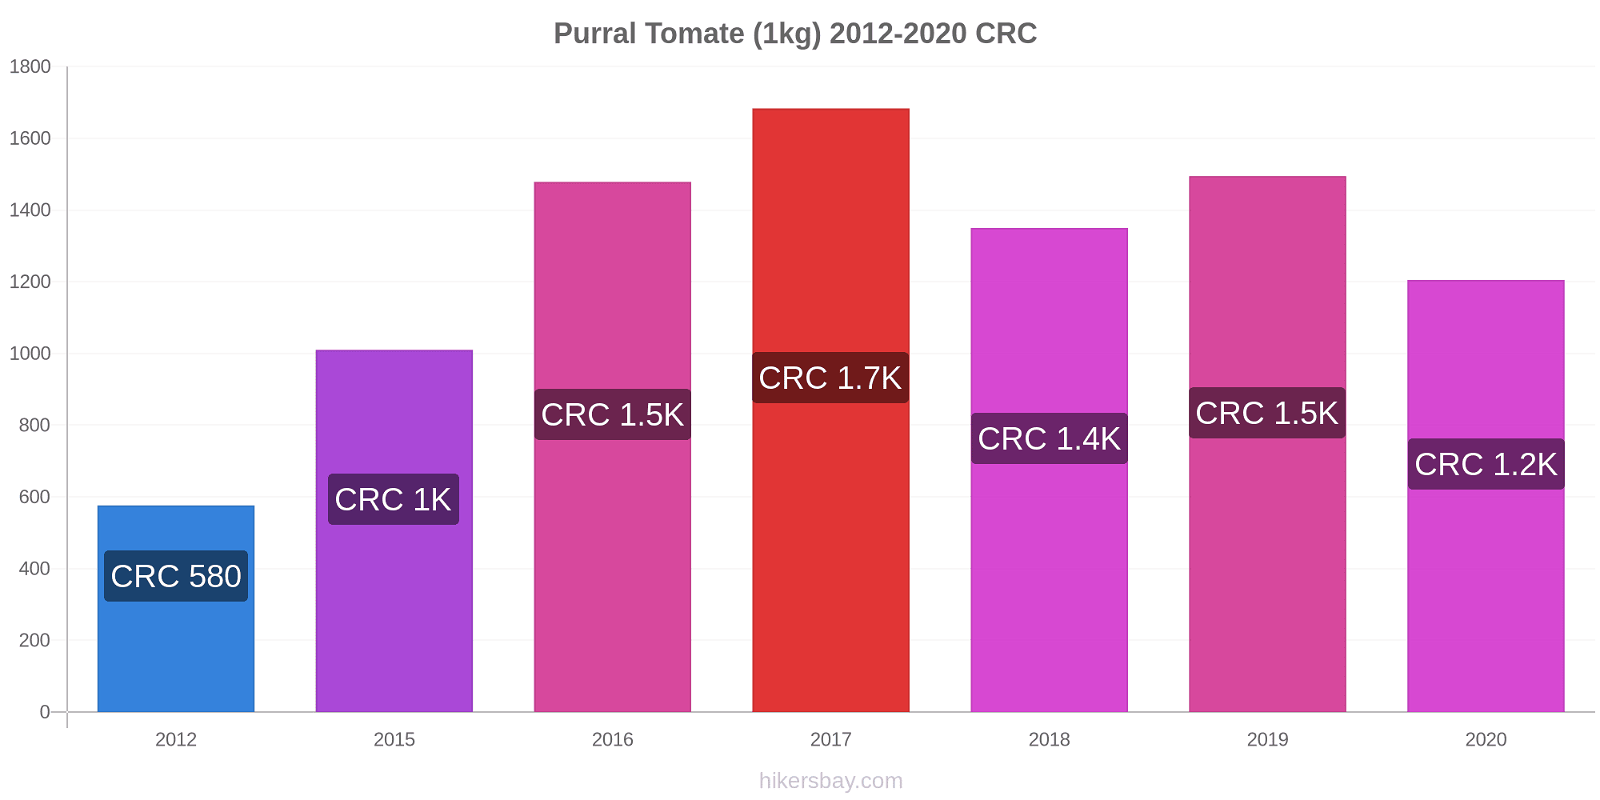 Purral cambios de precios Tomate (1kg) hikersbay.com